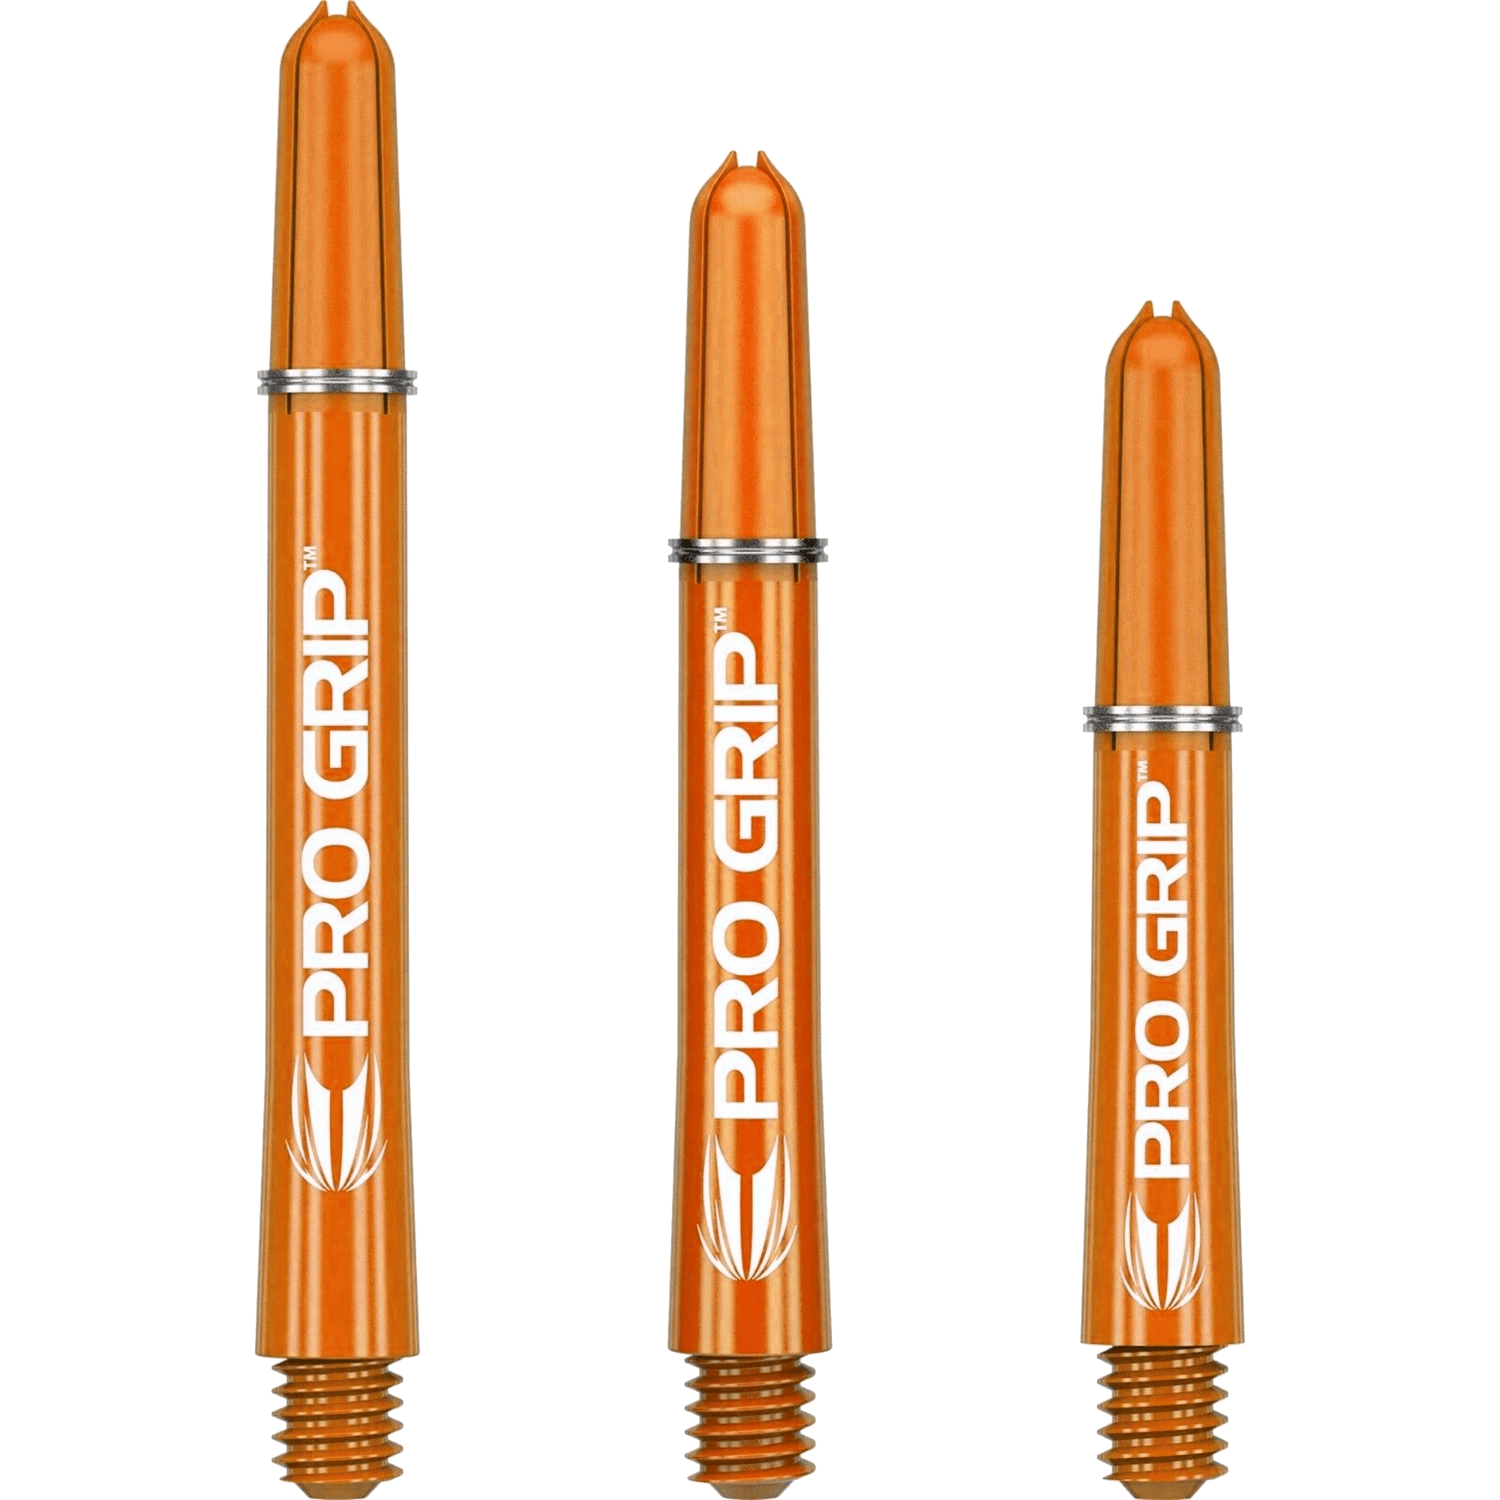 Target Pro Grip Shafts Set orange